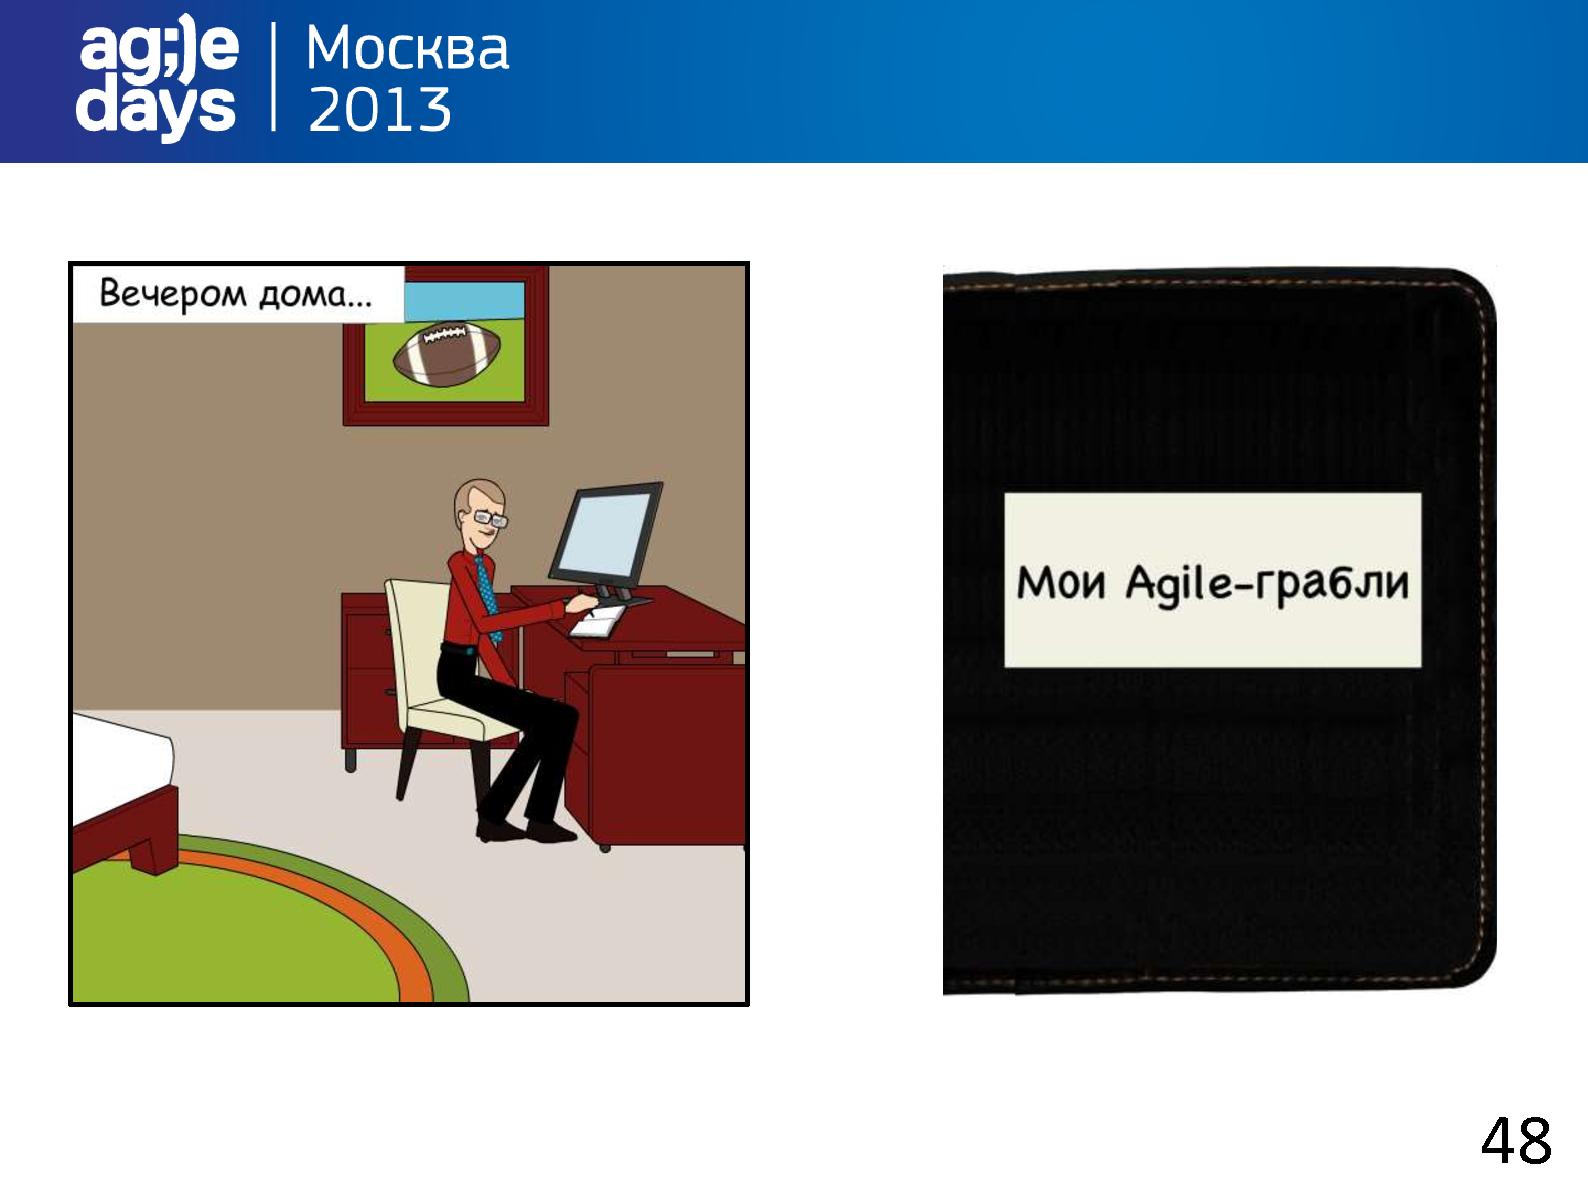 Файл:Agile-грабли проектировщика интерфейсов Семена (Никита Ефимов, AgileDays-2013).pdf